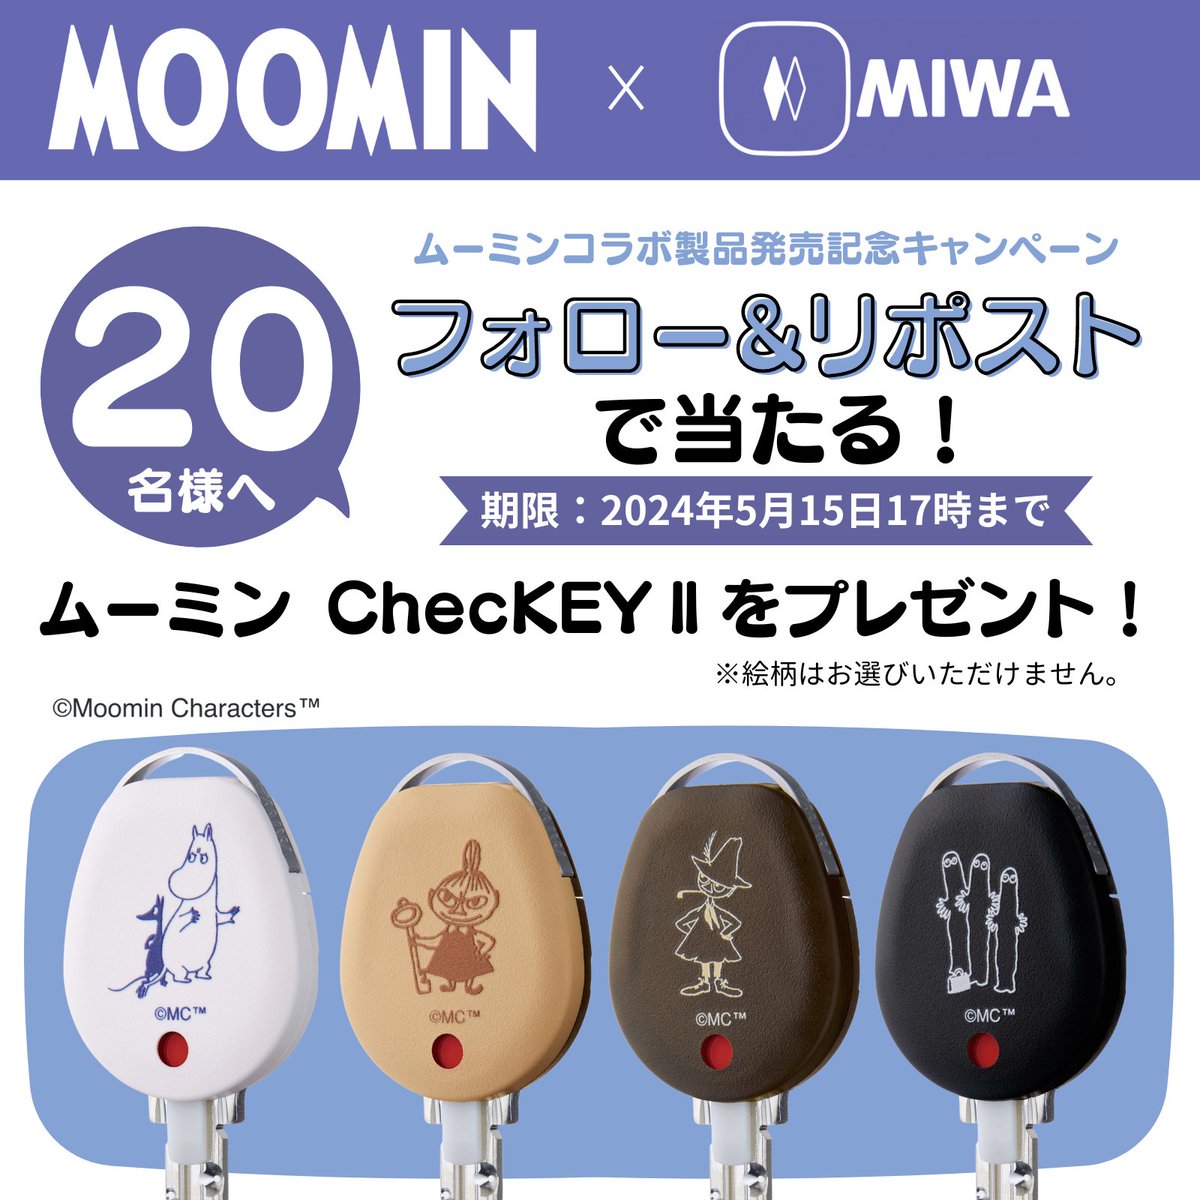 ／
🔑MOOMIN×MIWA🔑
🔑オリジナルグッズ発売記念🔑
🔑フォロー&RPキャンペーン🔑
＼

カギの戸締まりを確認できるグッズ
『ムーミン ChecKEYⅡ』をプレゼント！

ほしい方は
1️⃣このアカウントをフォロー
2️⃣この投稿をRP

グッズのデザインはこちらをチェック↓
shop.miwa-lock.co.jp/ec/LP/moomin
#ムーミン